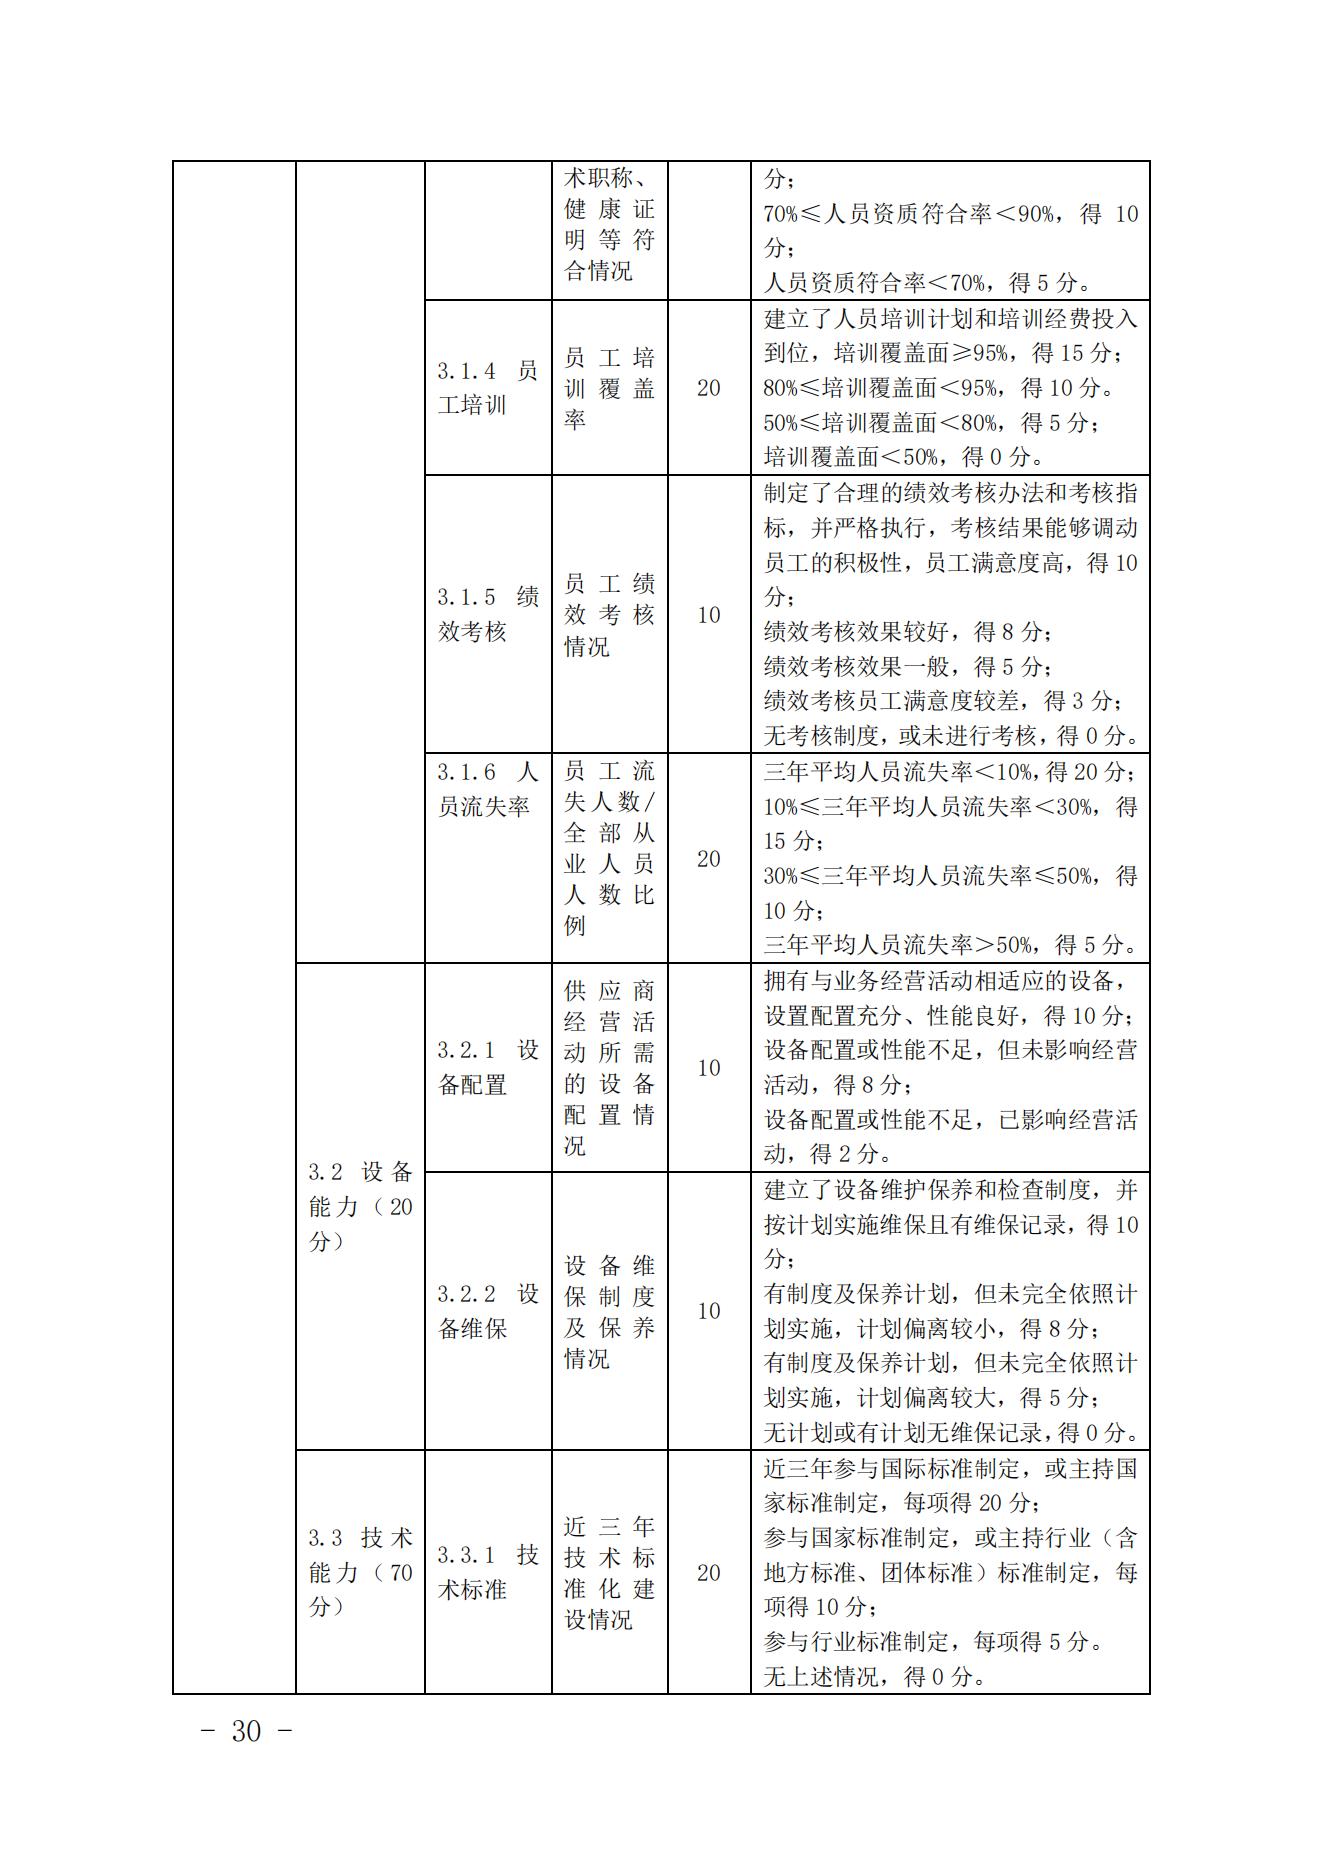 关于印发《中国核能行业协会核能行业供应商信用评价管理办法》《中国核能行业协会核能行业供应商信用评价规范》的通知_29.jpg